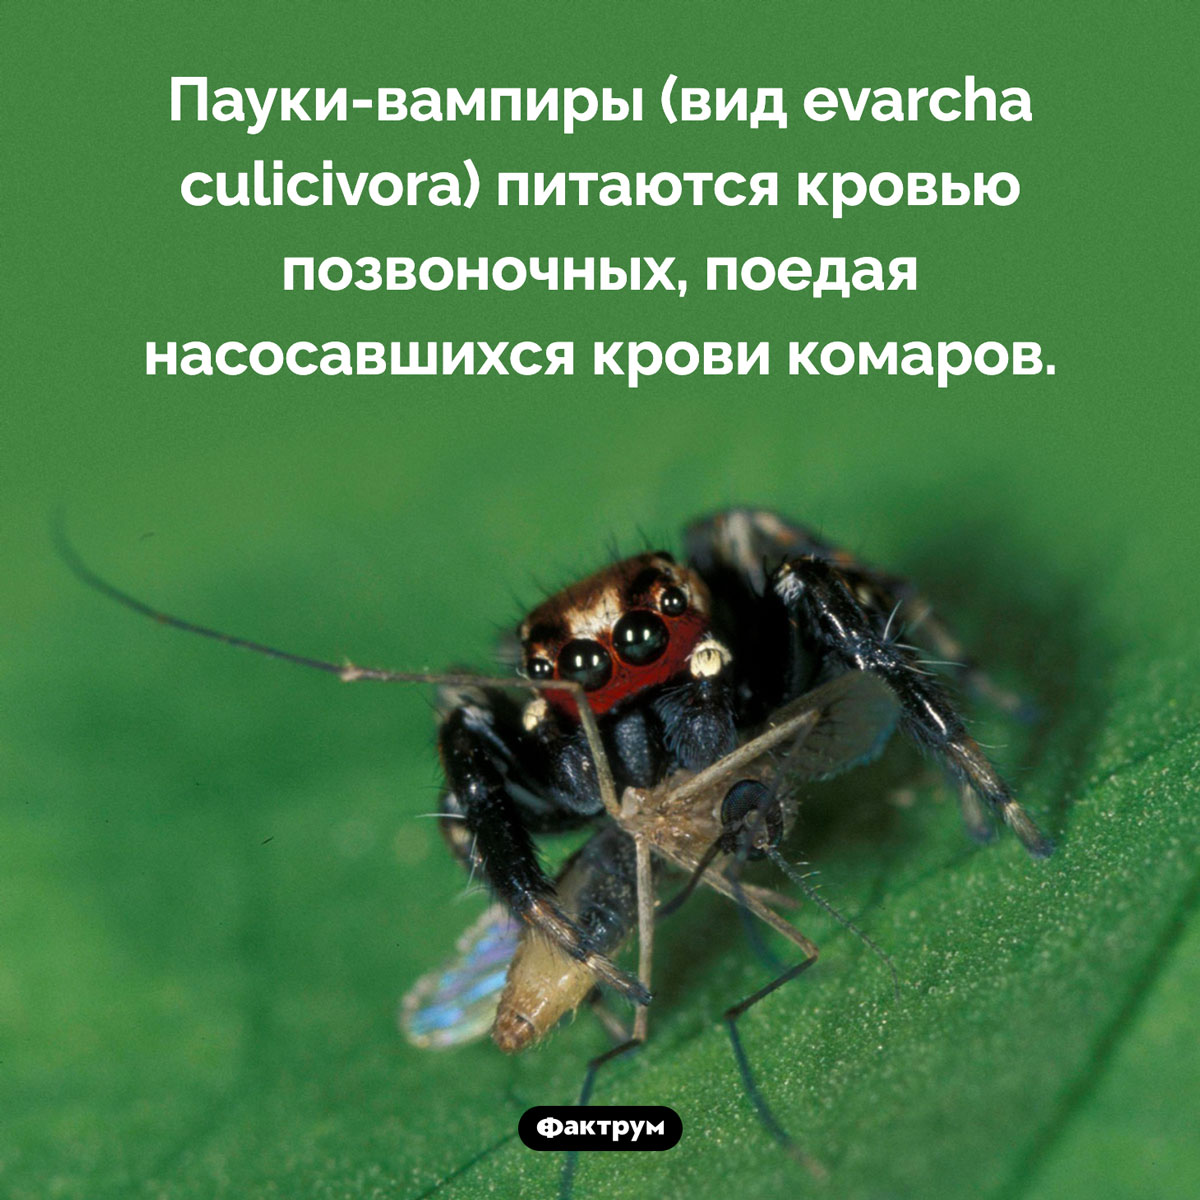 Пауки-вампиры. Пауки-вампиры (вид evarcha culicivora) питаются кровью позвоночных, поедая насосавшихся крови комаров.